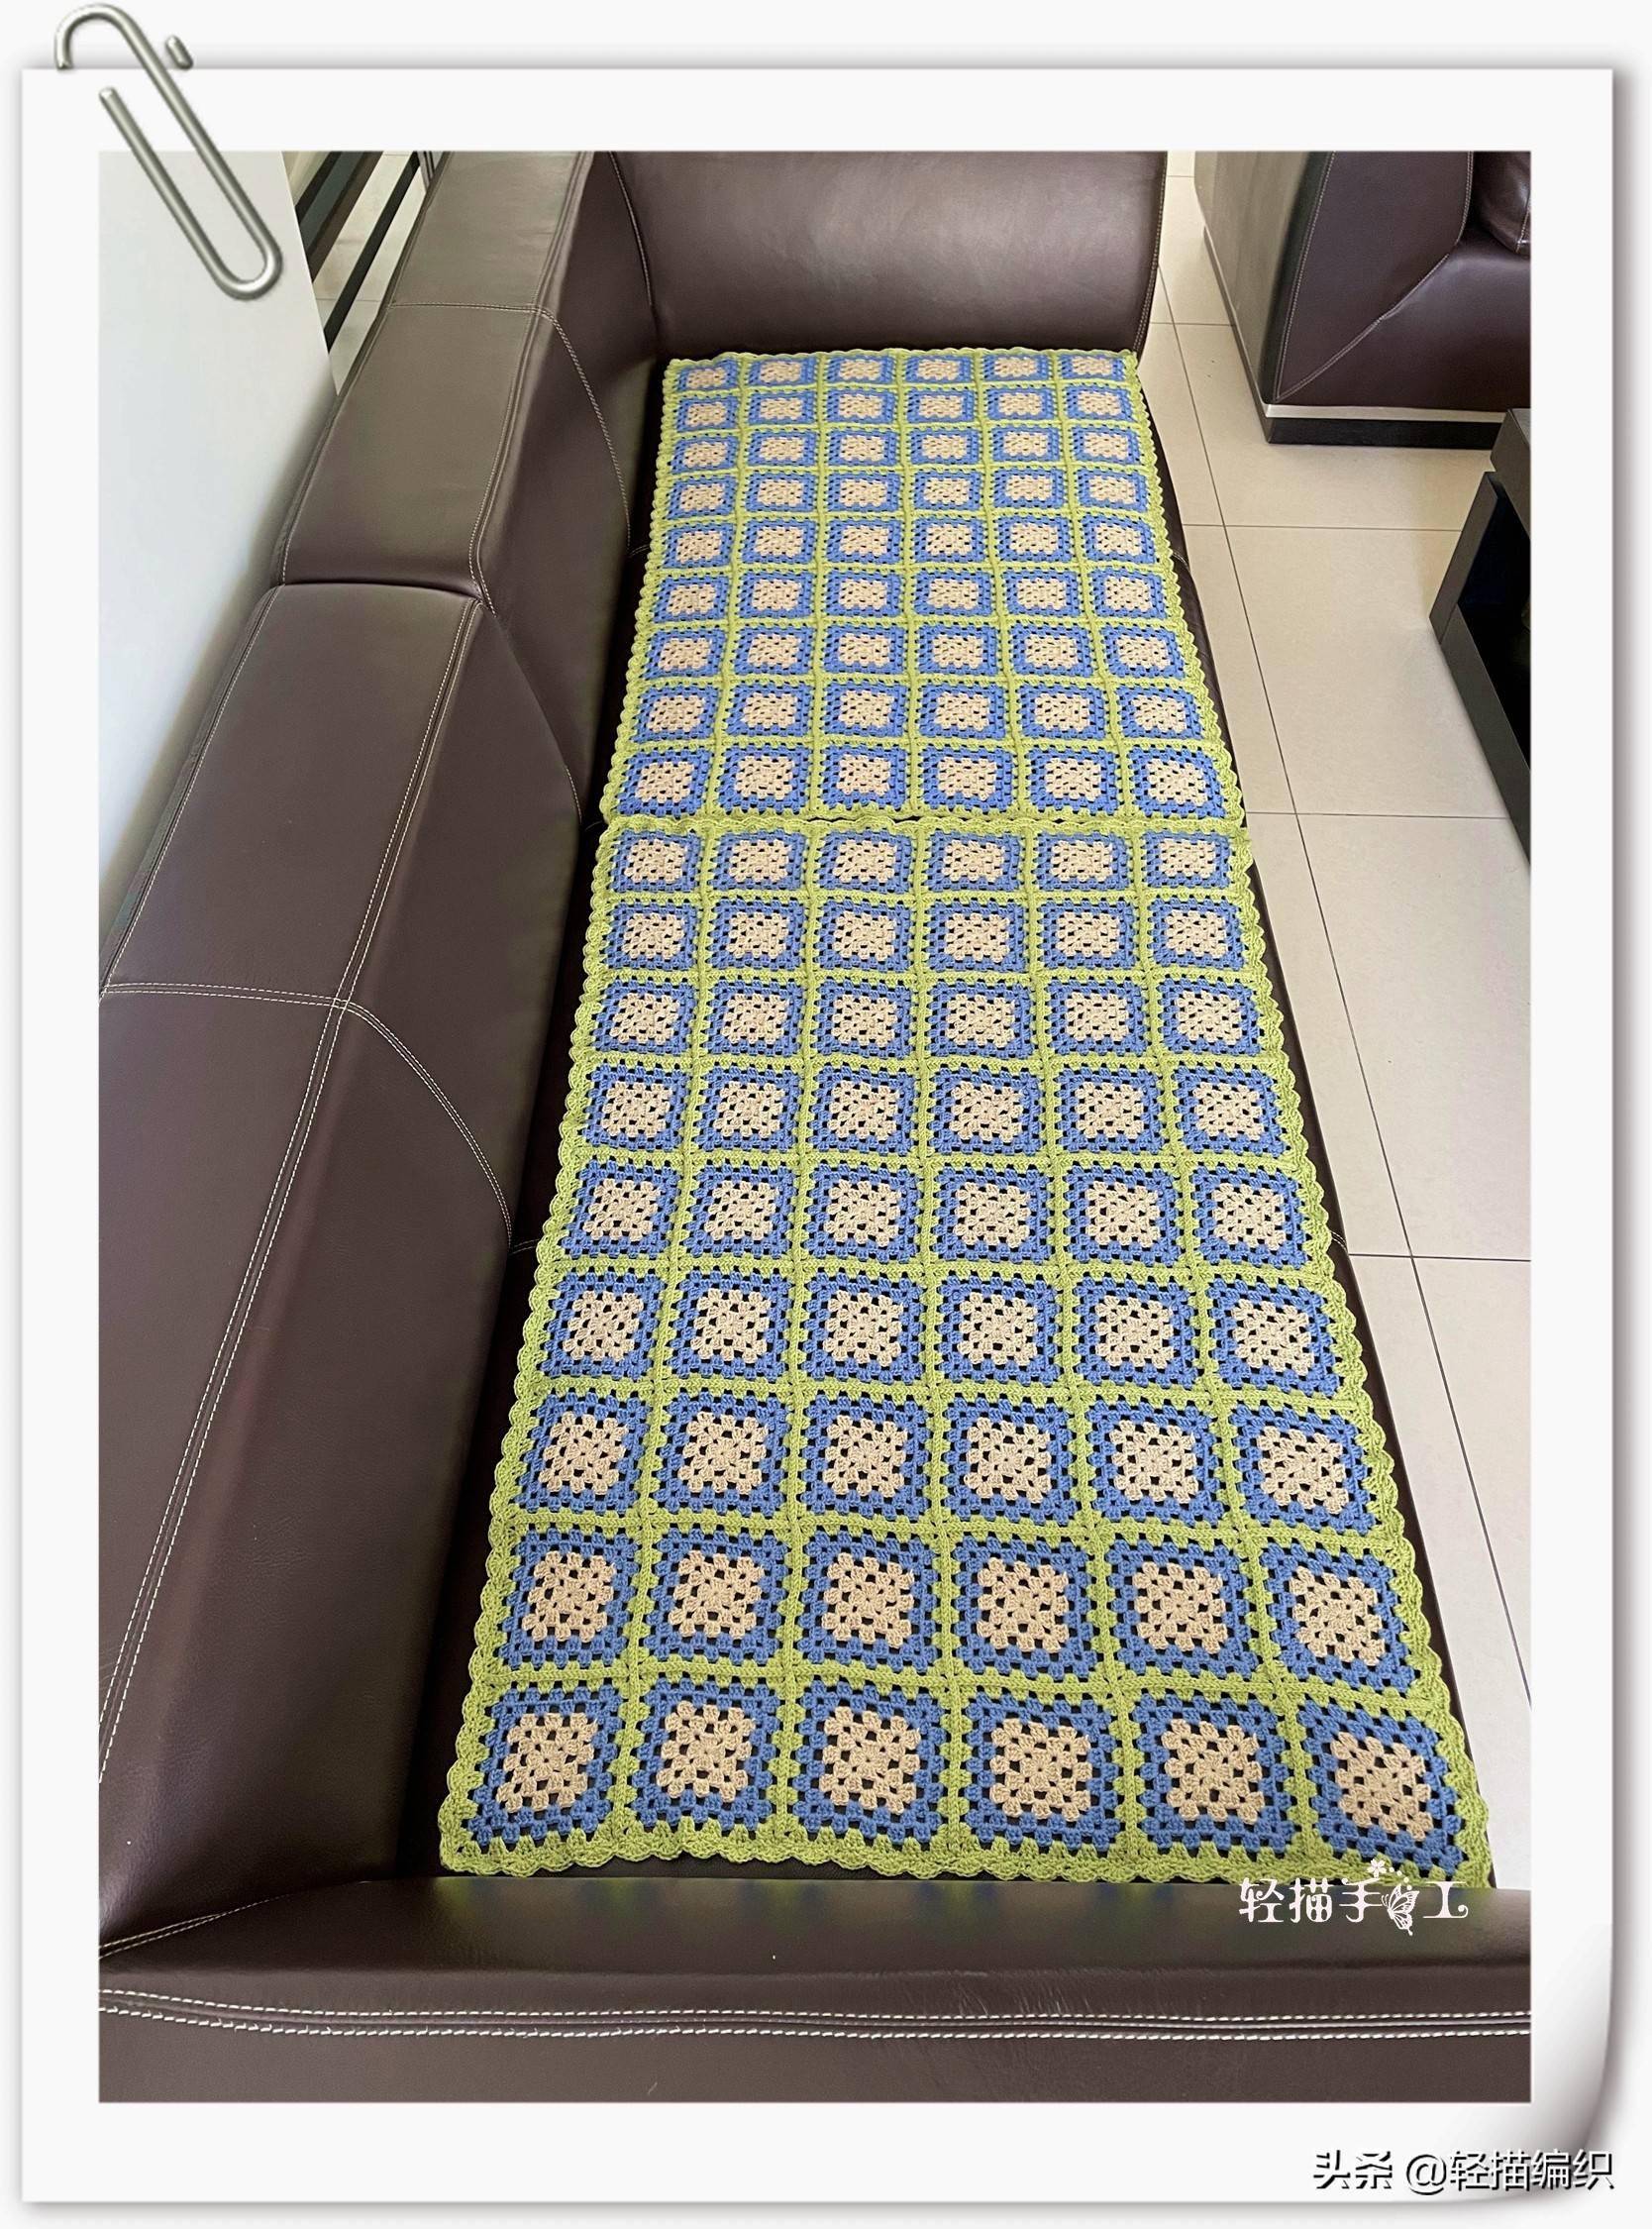 钩条沙发垫,一张长沙发分成2条垫子,经典的祖母格图案,每条54片